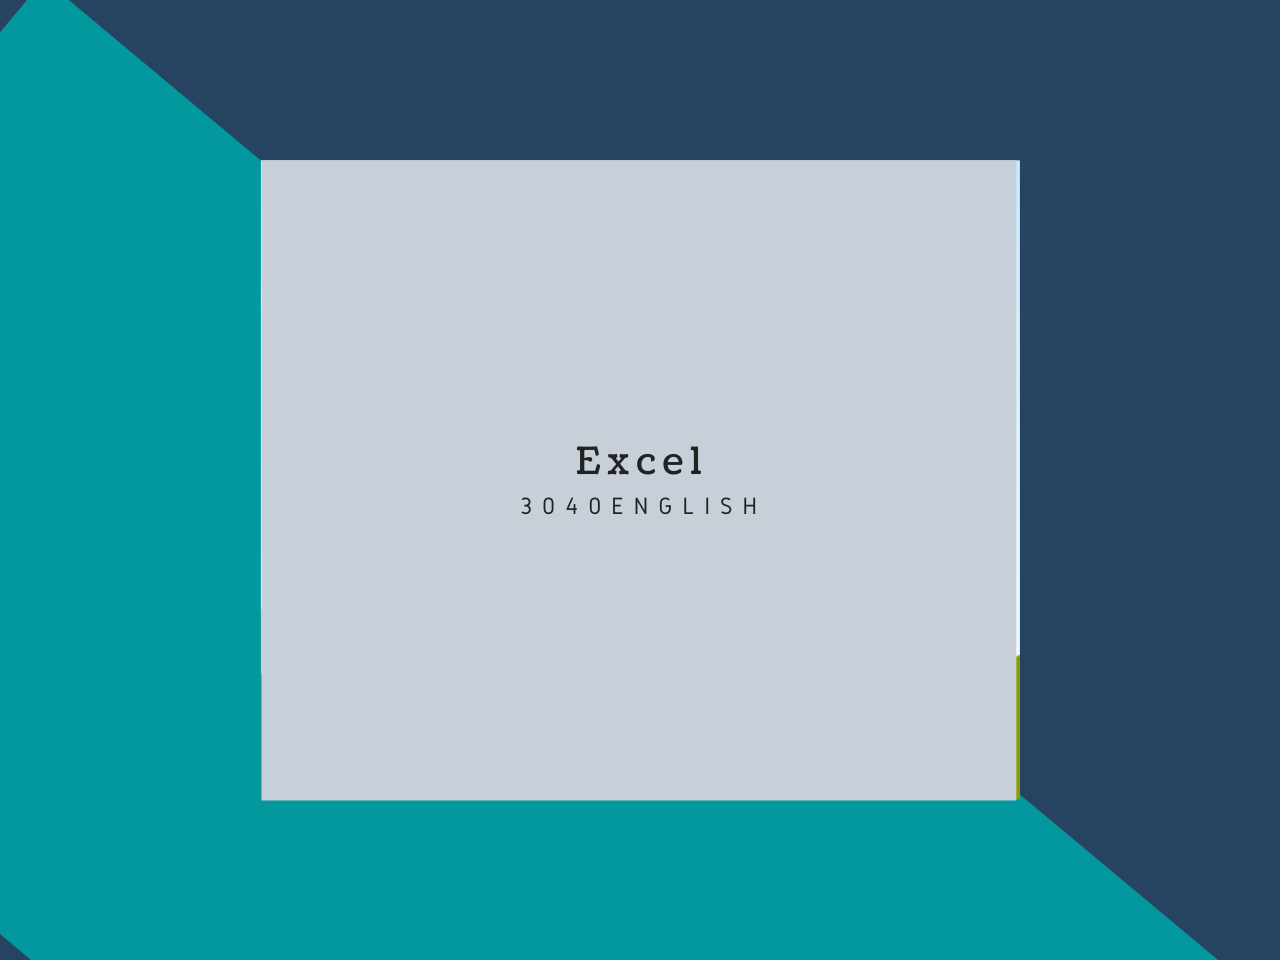 英語 日本語 Excel で使われている用語 英語表現対応表 30代40代で身につける英会話